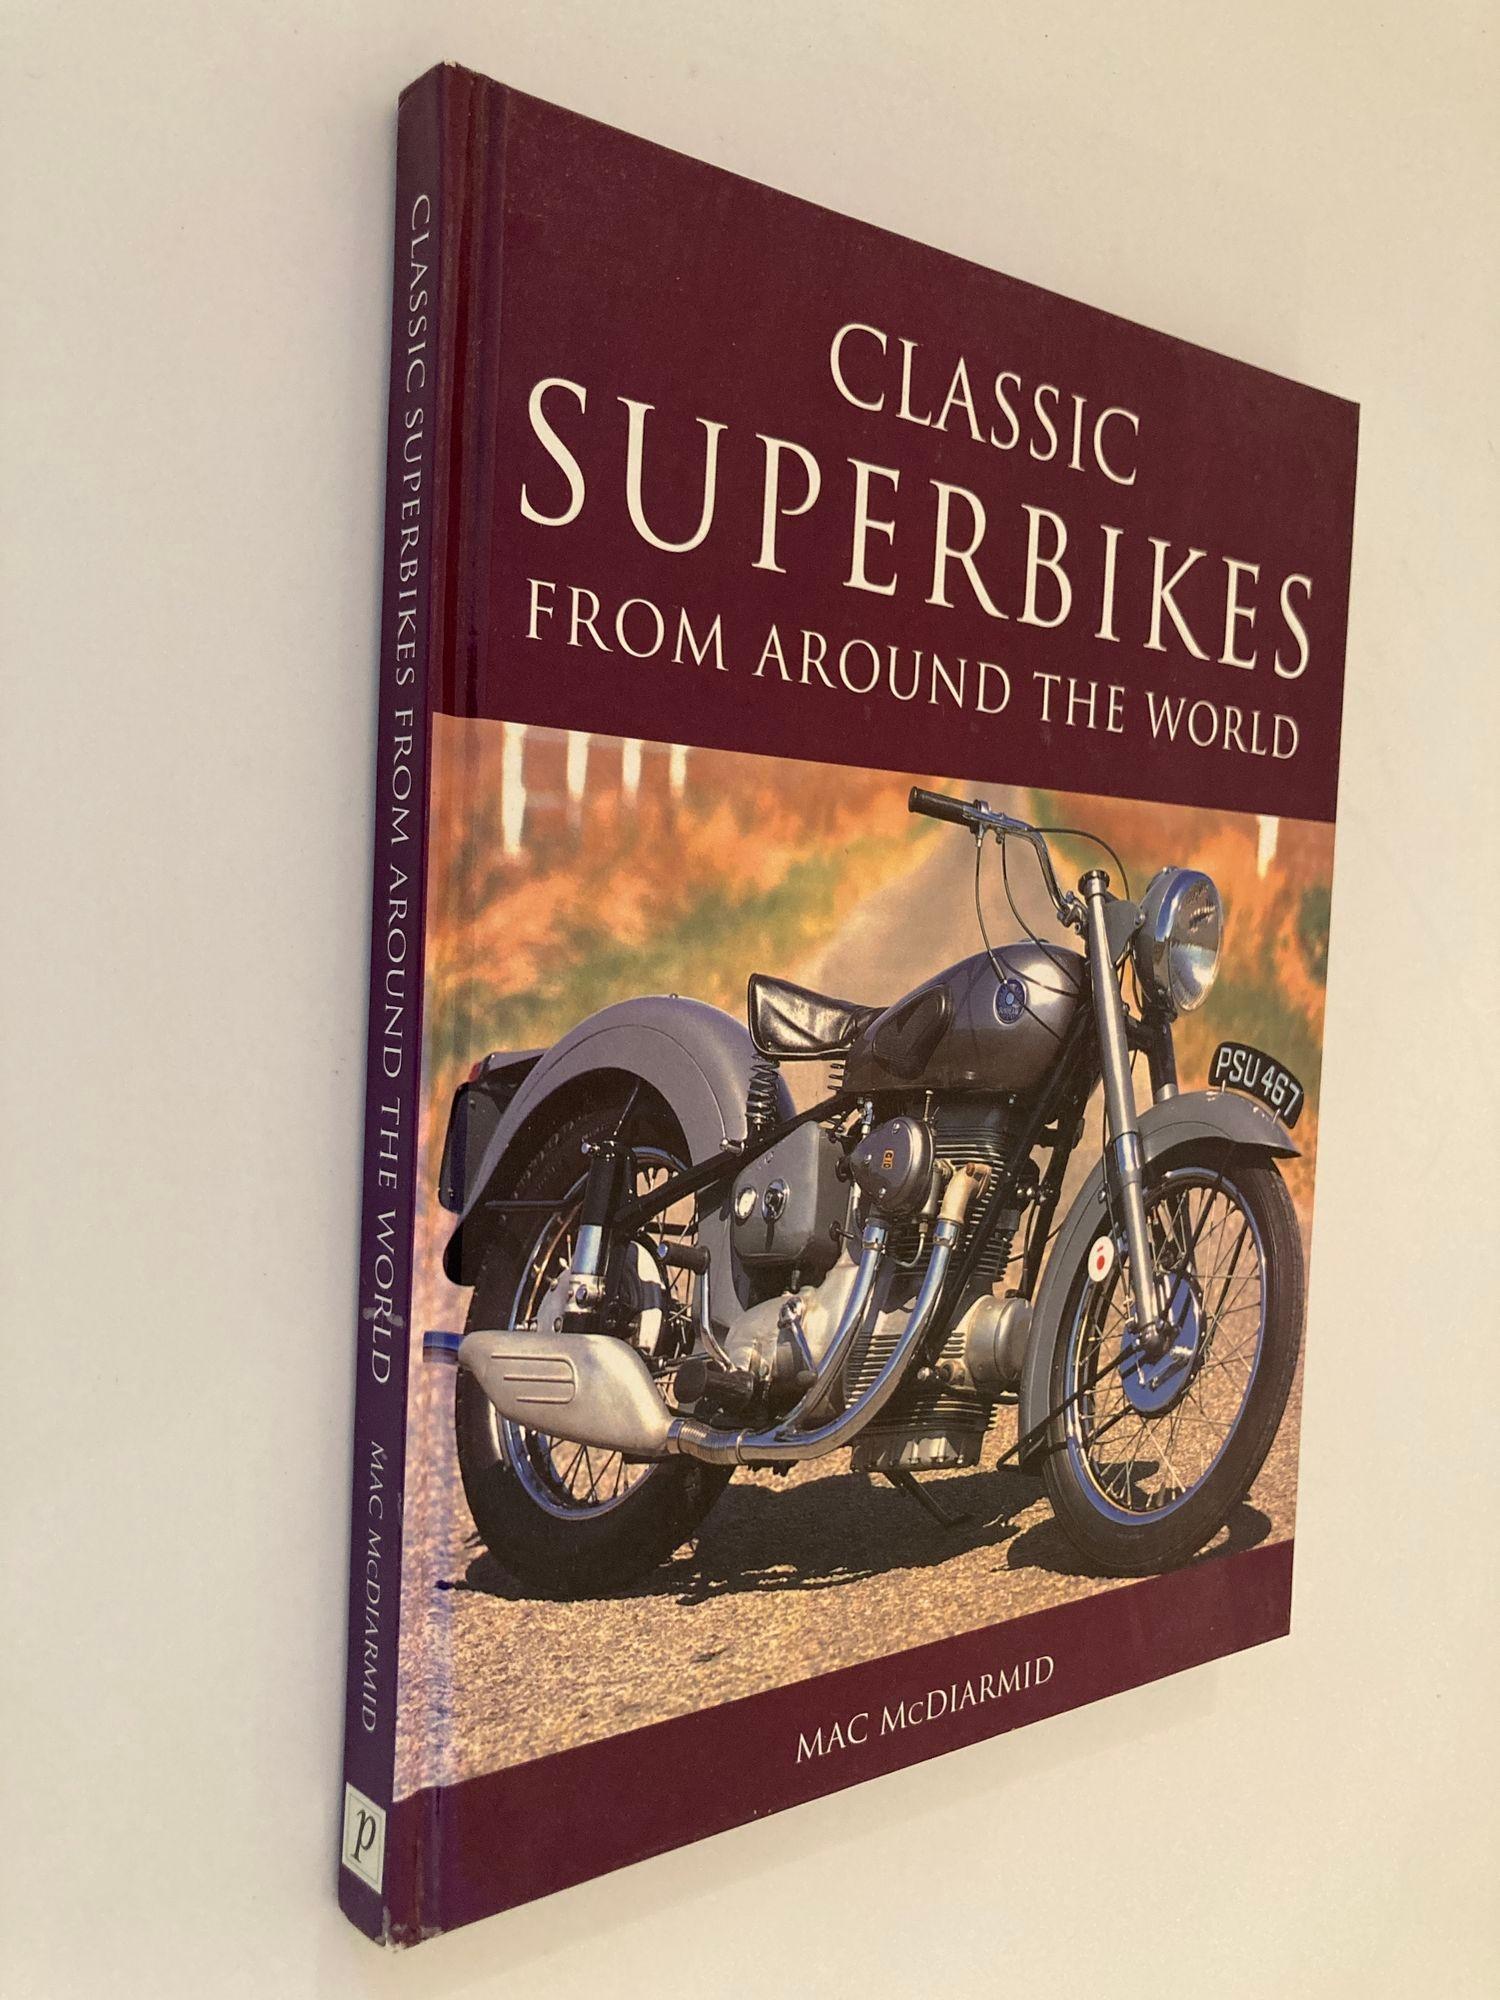 Classic Superbikes from Around the World Coffee Table Book Hardcover 2003.
par Mac. McDiarmid.
Ce qui est bien avec le livre de Mac McDiarmid, Classic Superbikes from Around the World.
Le livre ne nous donne pas seulement un aperçu de certains